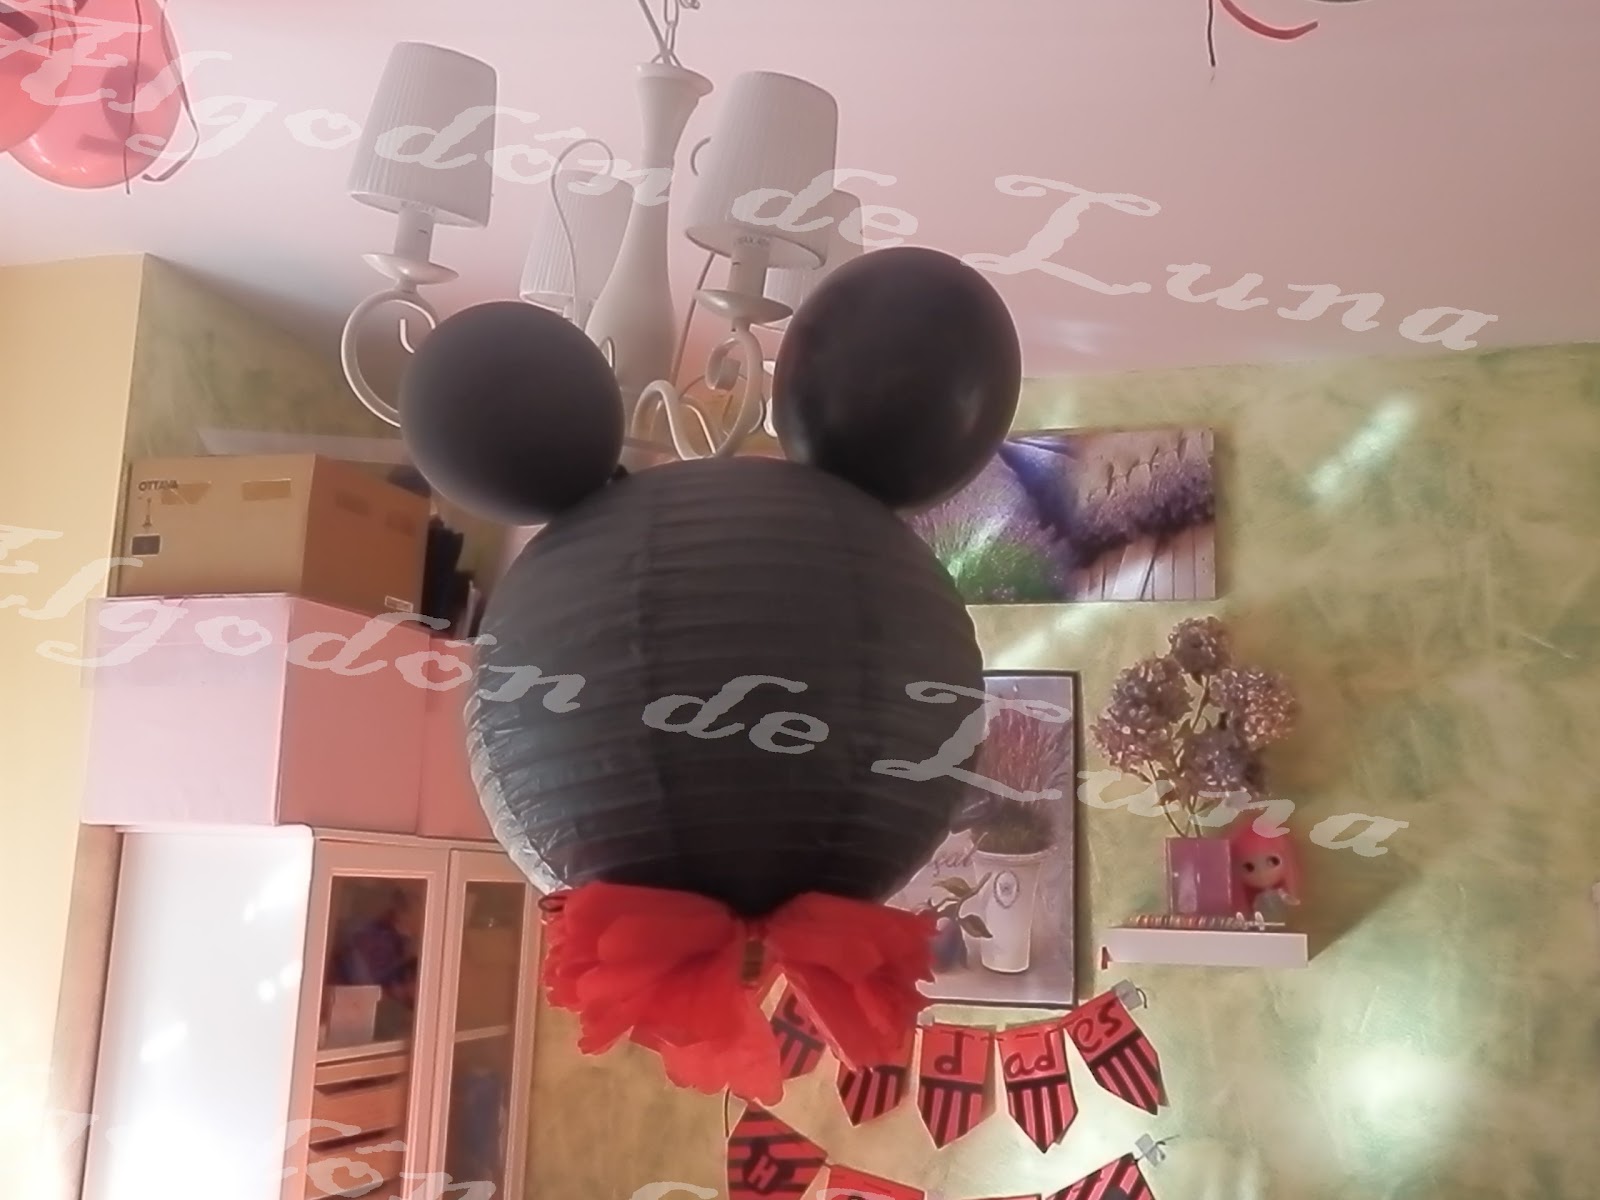 Algodón de Luna: Diy piñata infantil con lámpara de papel y globos negros  con letras para fiesta cumpleaños de niños de Mickey Mouse.